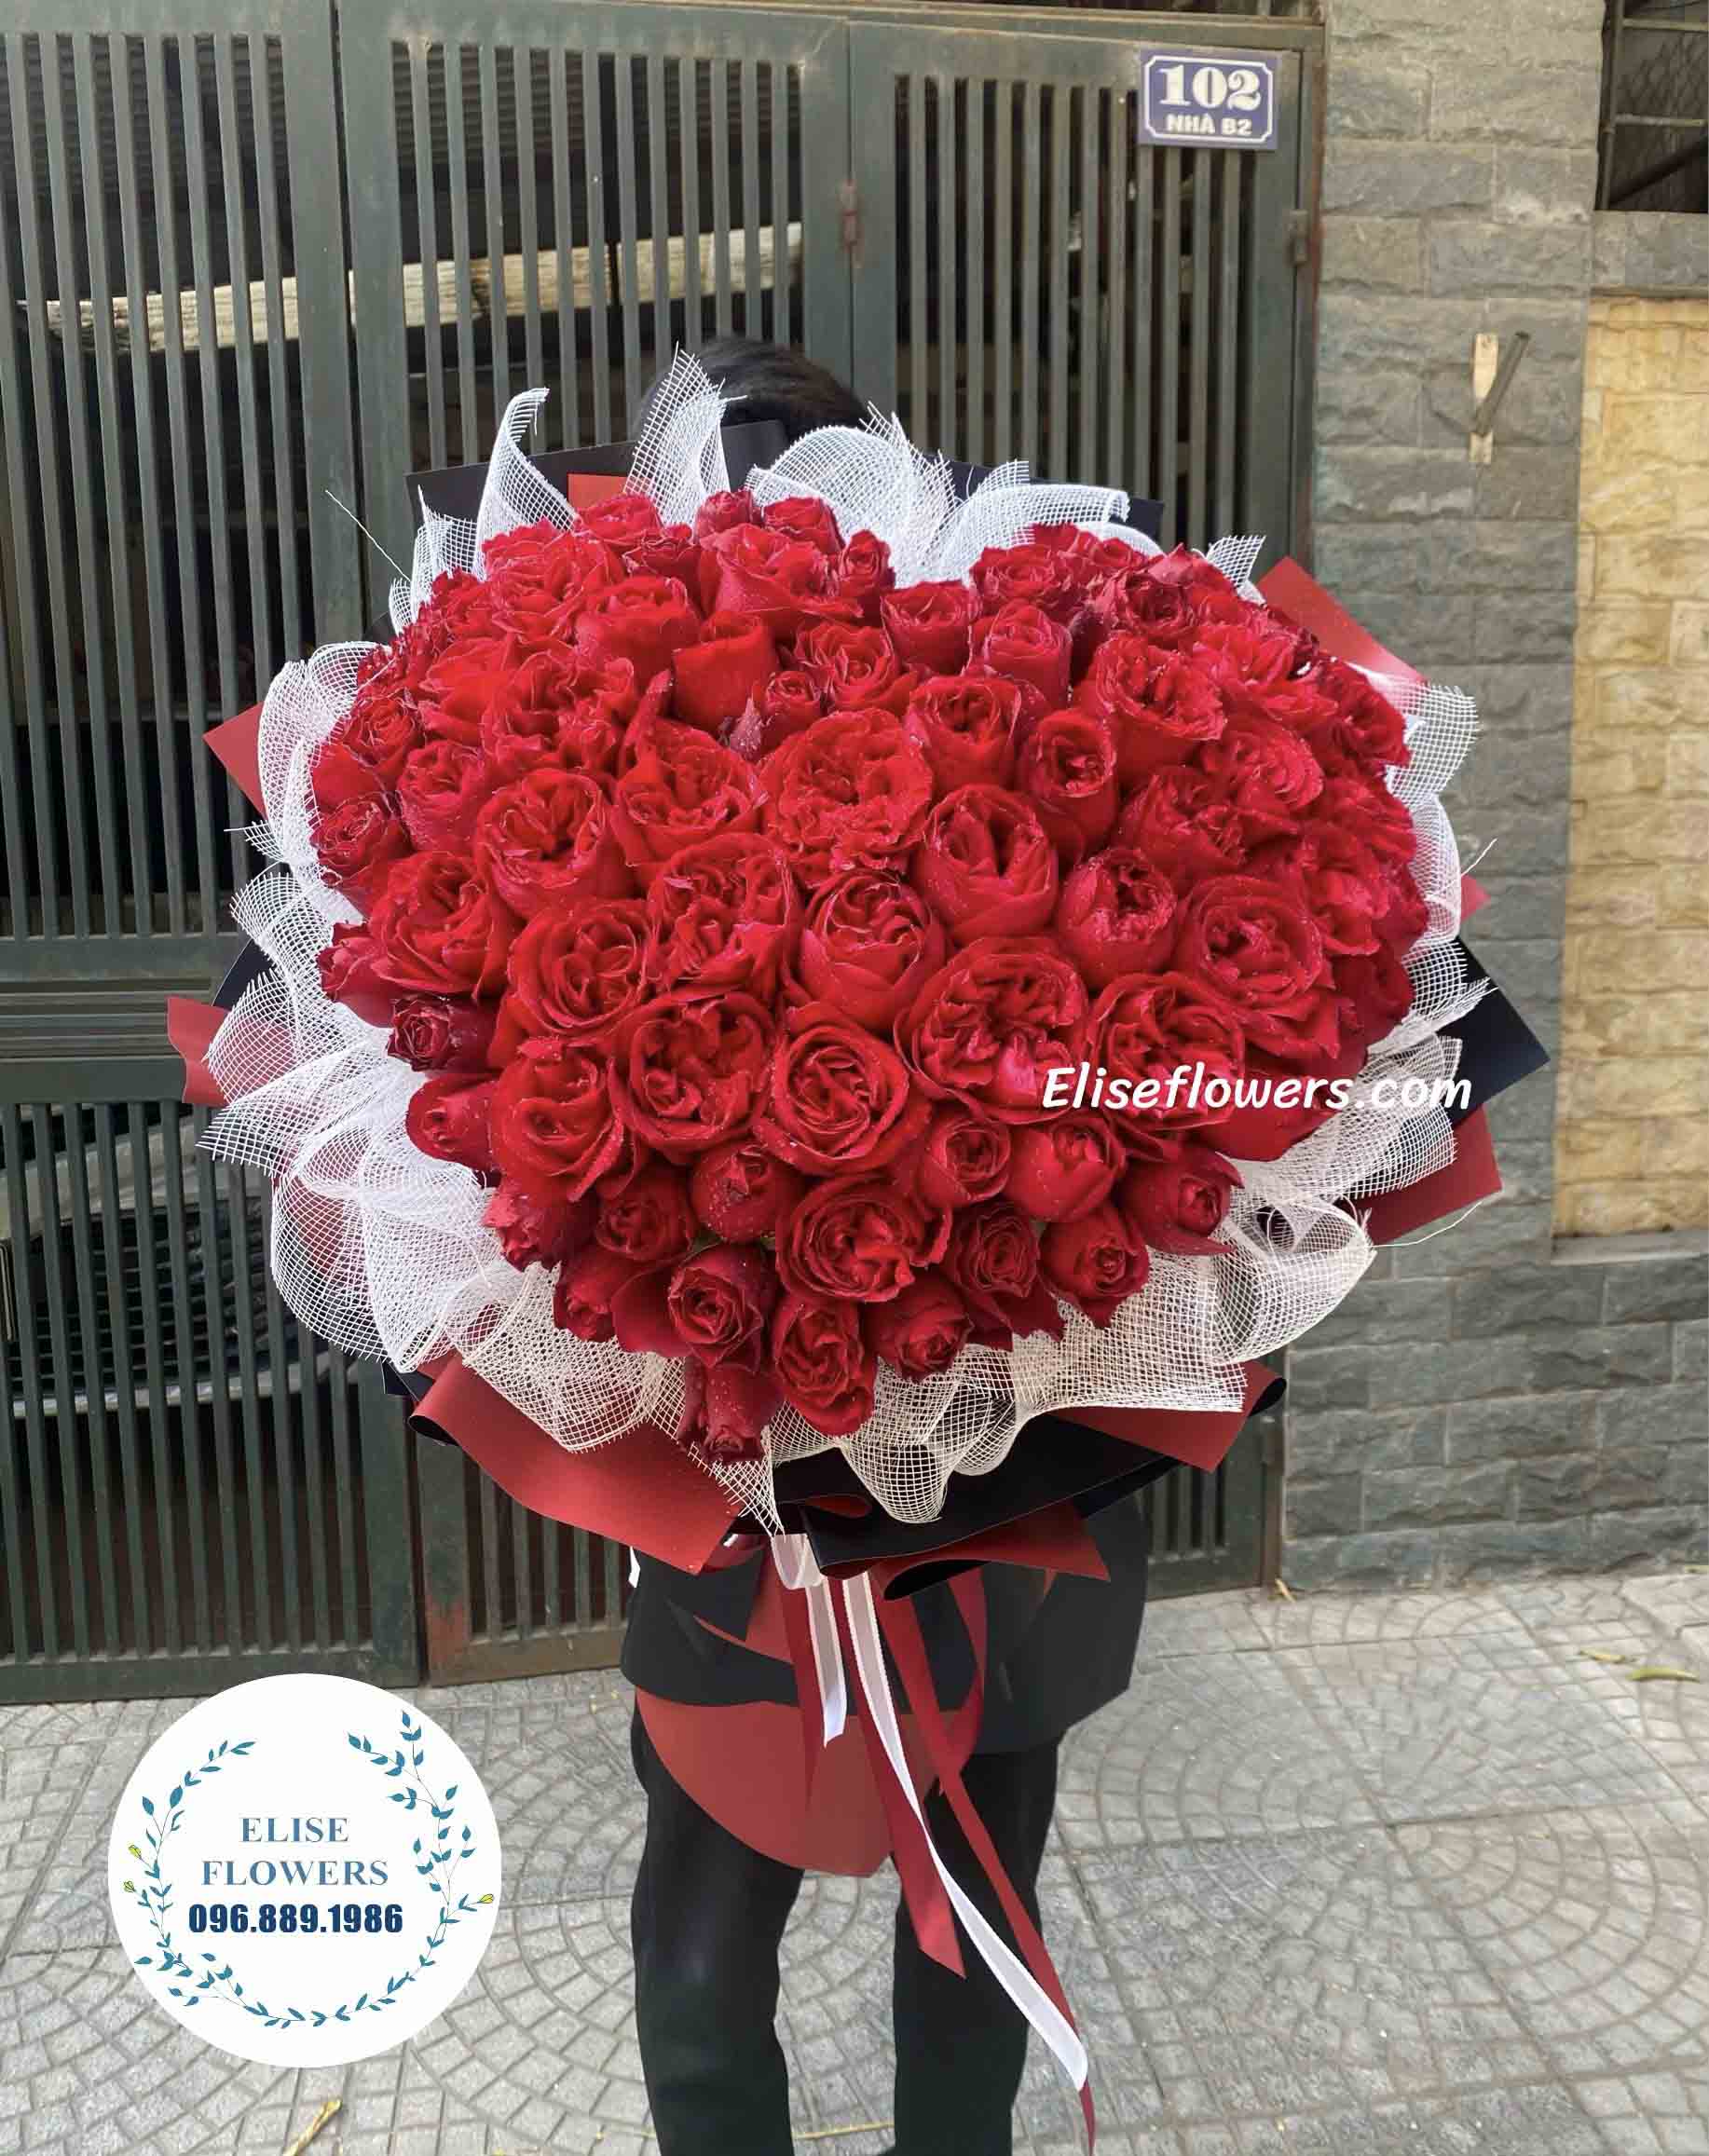 20 bó hoa valentine đẹp chỉ từ 300k tặng bạn gái mẹ đồng nghiệp ý nghĩa